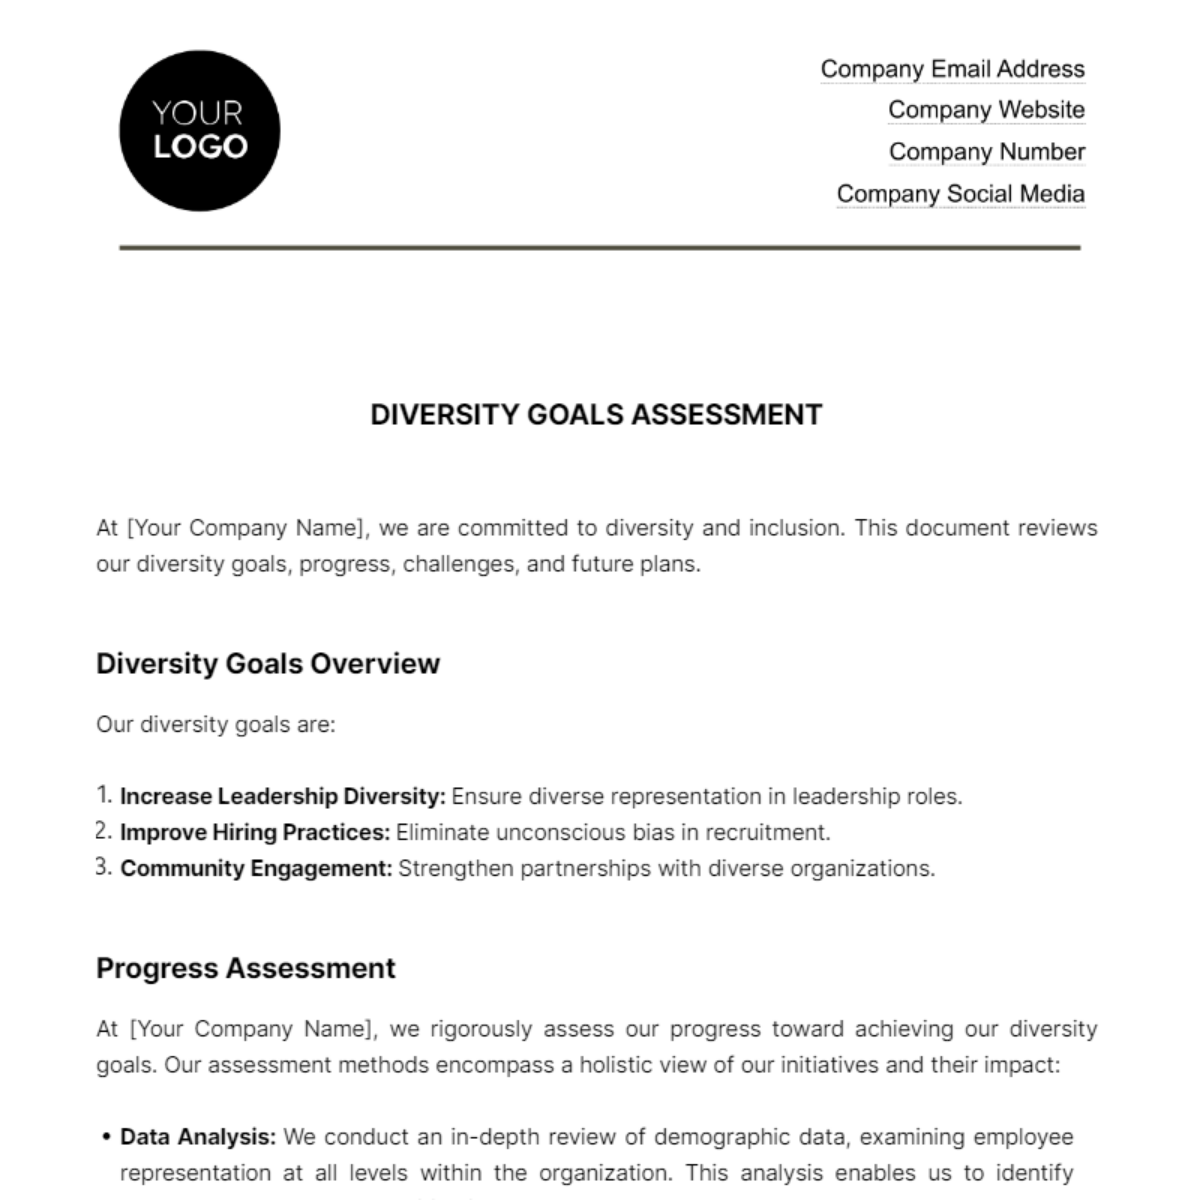 Diversity Goals Assessment HR Template